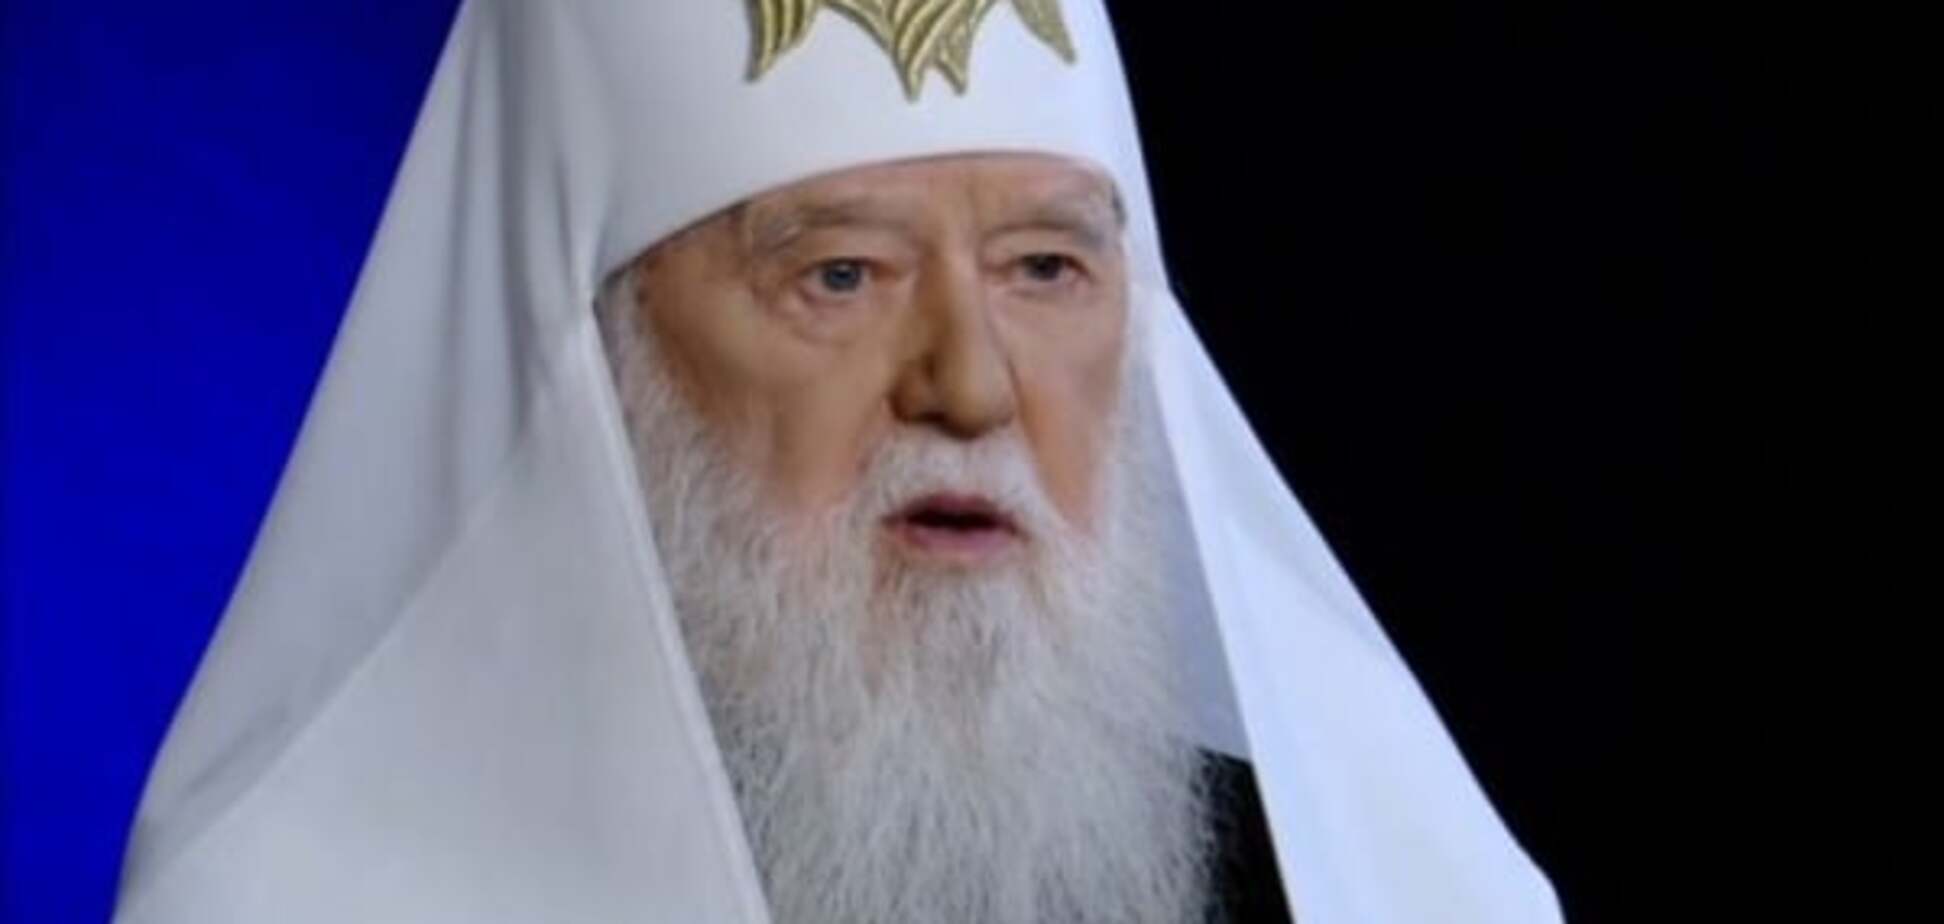 Недолік суспільства і гріх перед Богом: патріарх Філарет висловився про корупцію в Україні